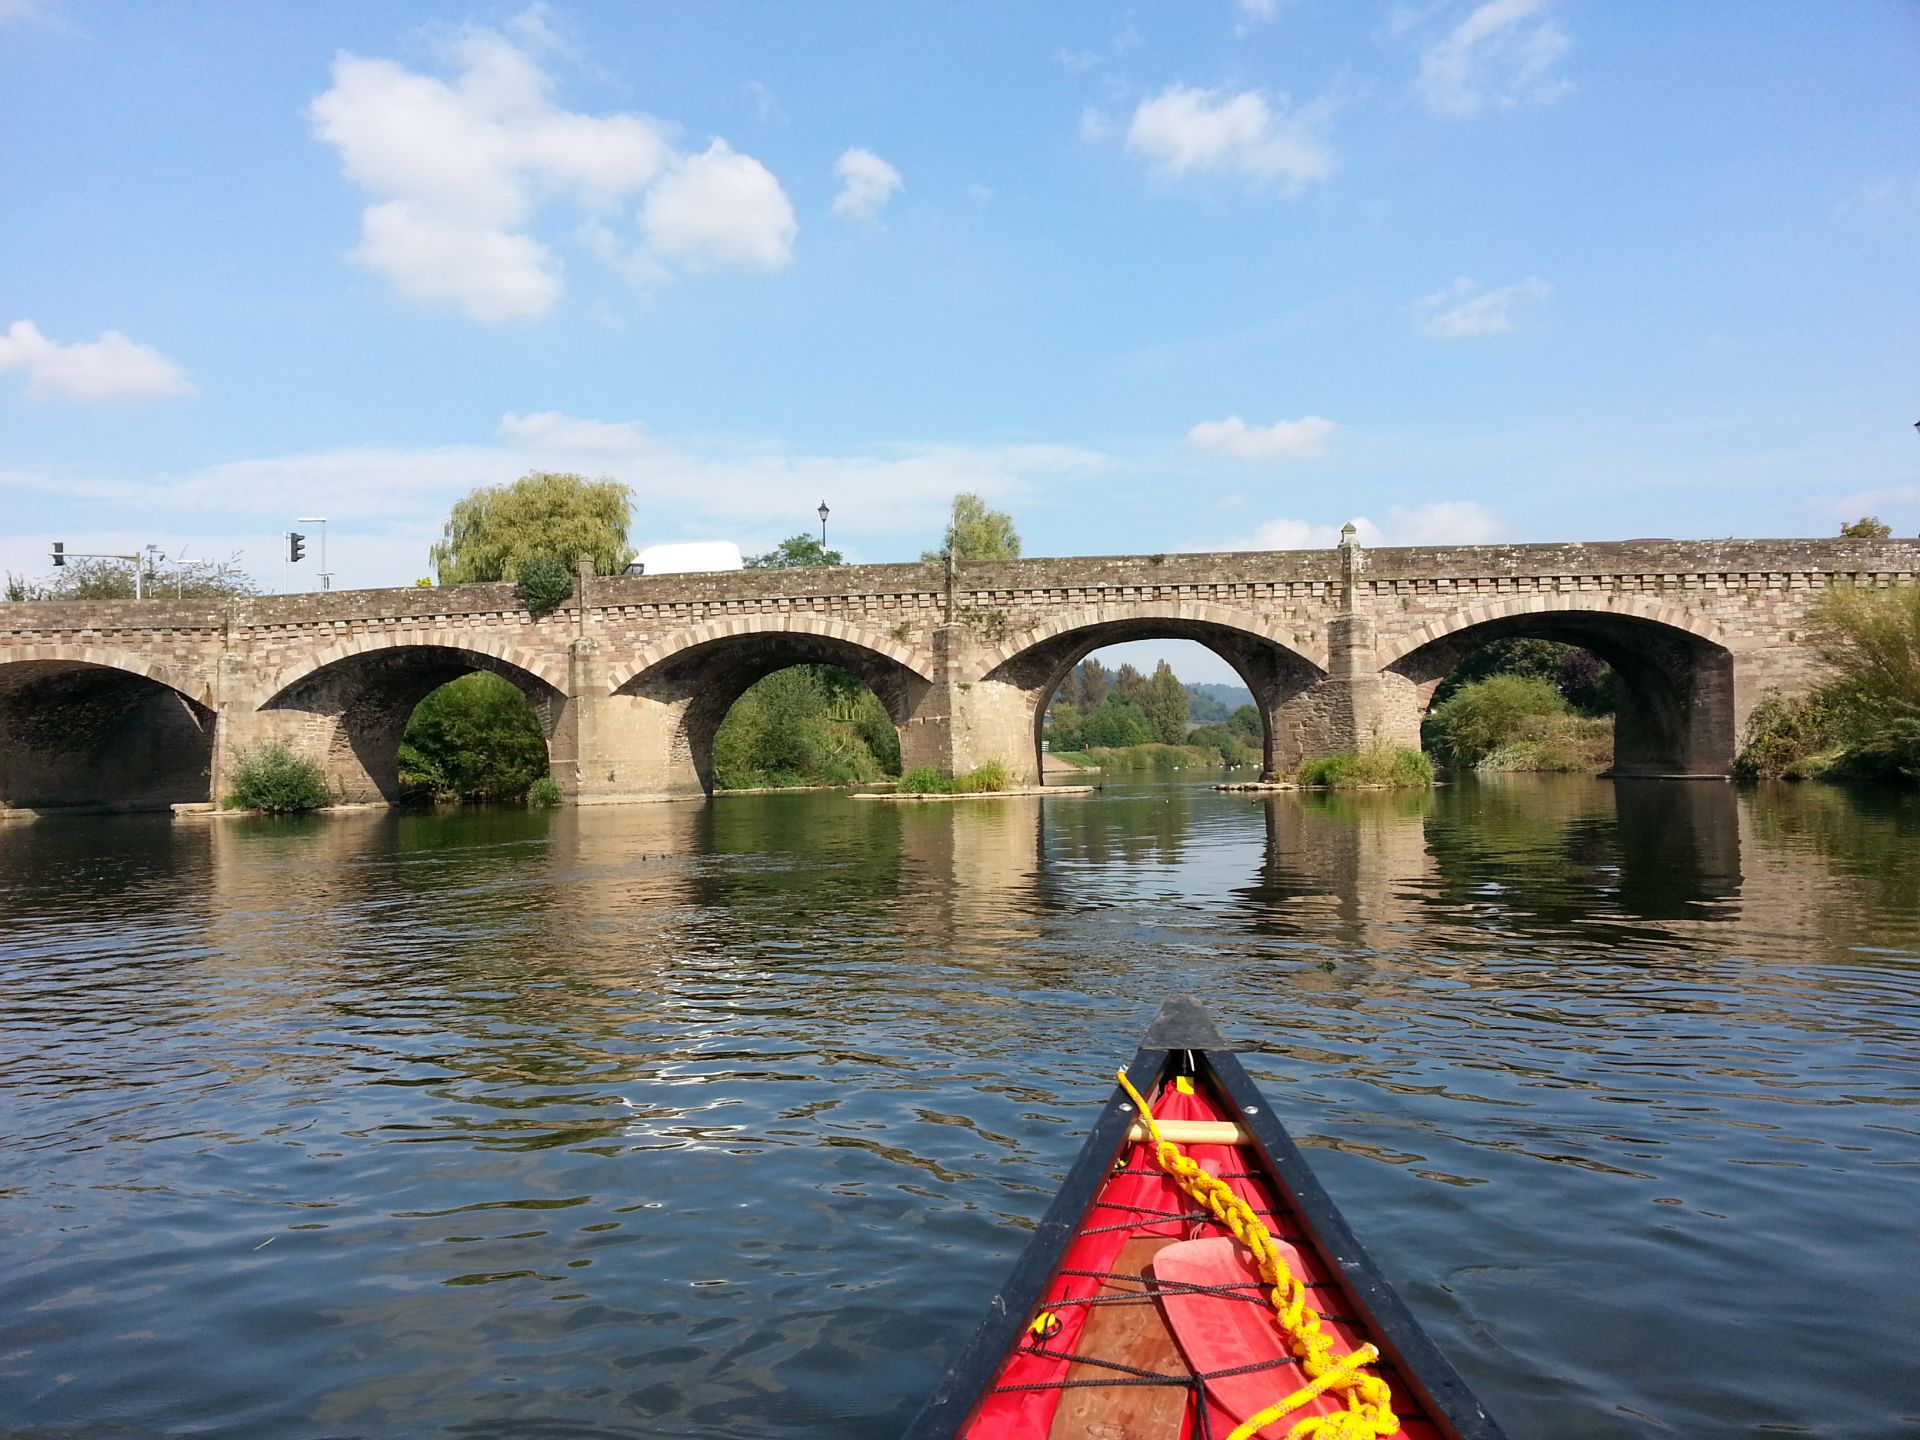 Monmouth Bridge